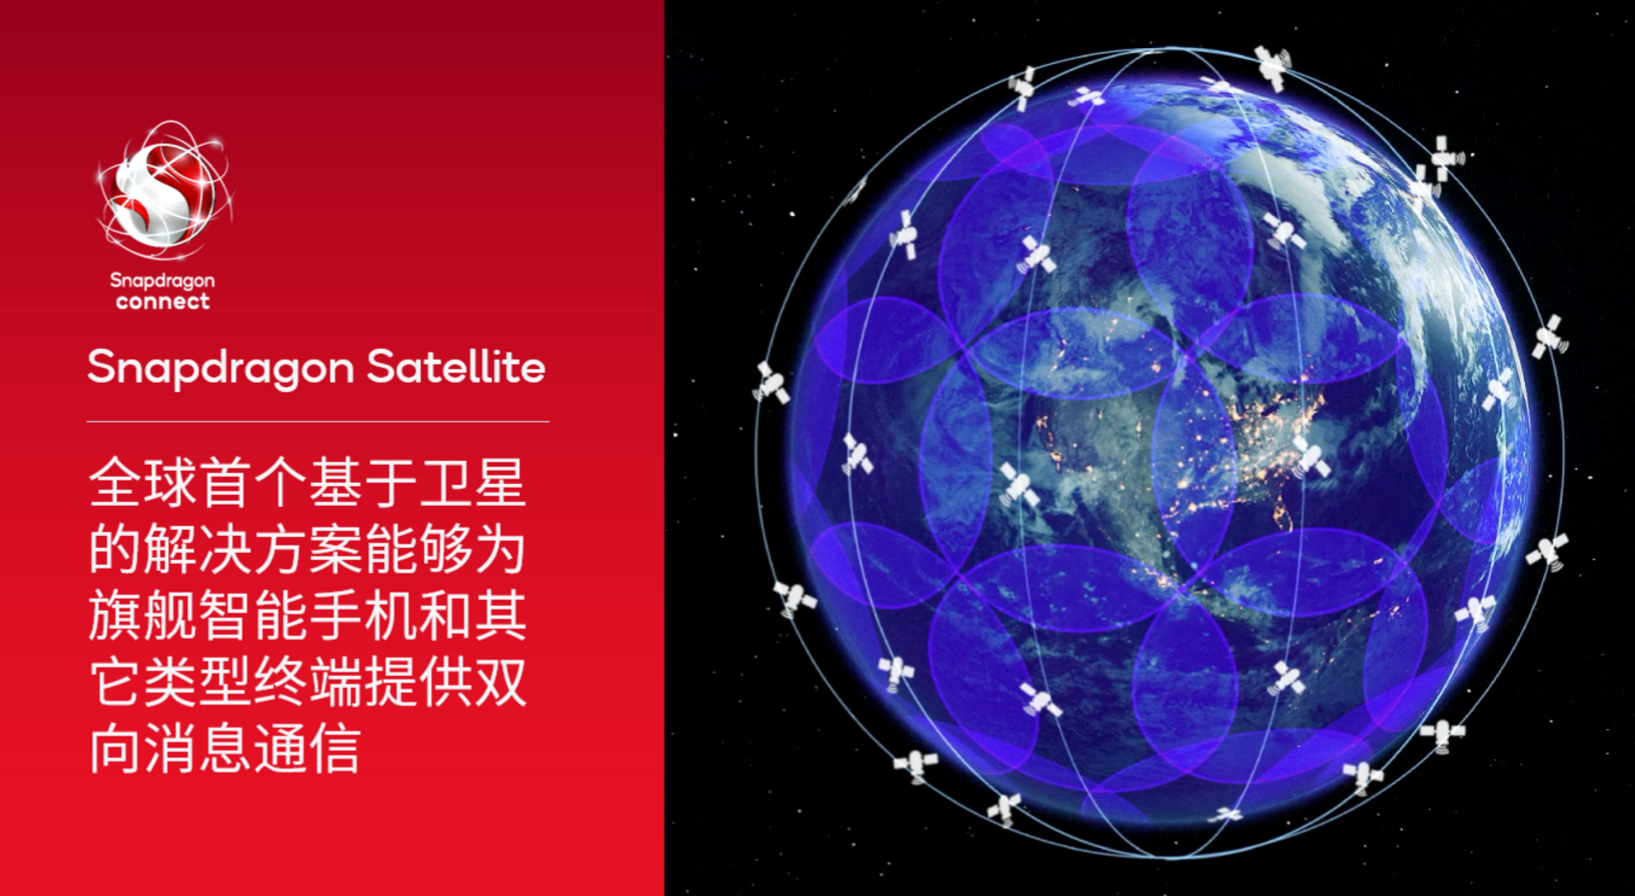 高通推出Snapdragon Satellite——全球首个基于卫星的解决方案能够为旗舰智能手机和其它类型终端提供双向消息通信